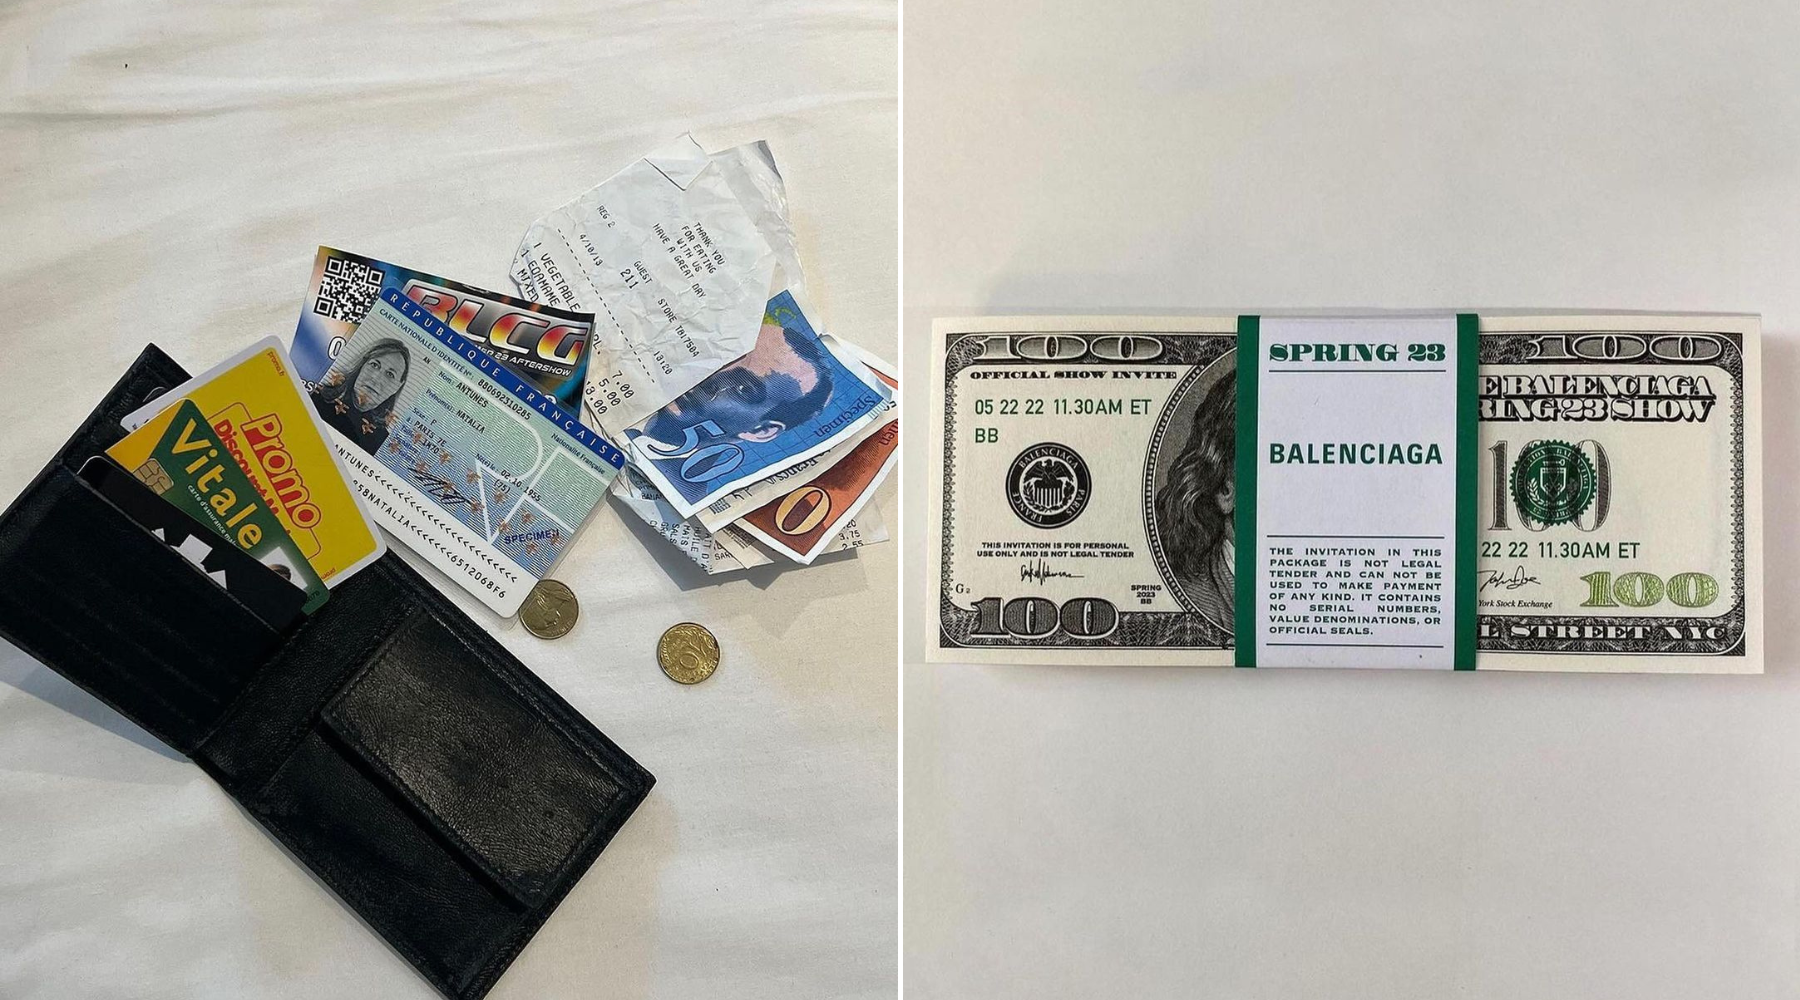 Od izgubljenog novčanika do polomljenog telefona – izdvojili smo upečatljive pozivnice za Balenciaga revije